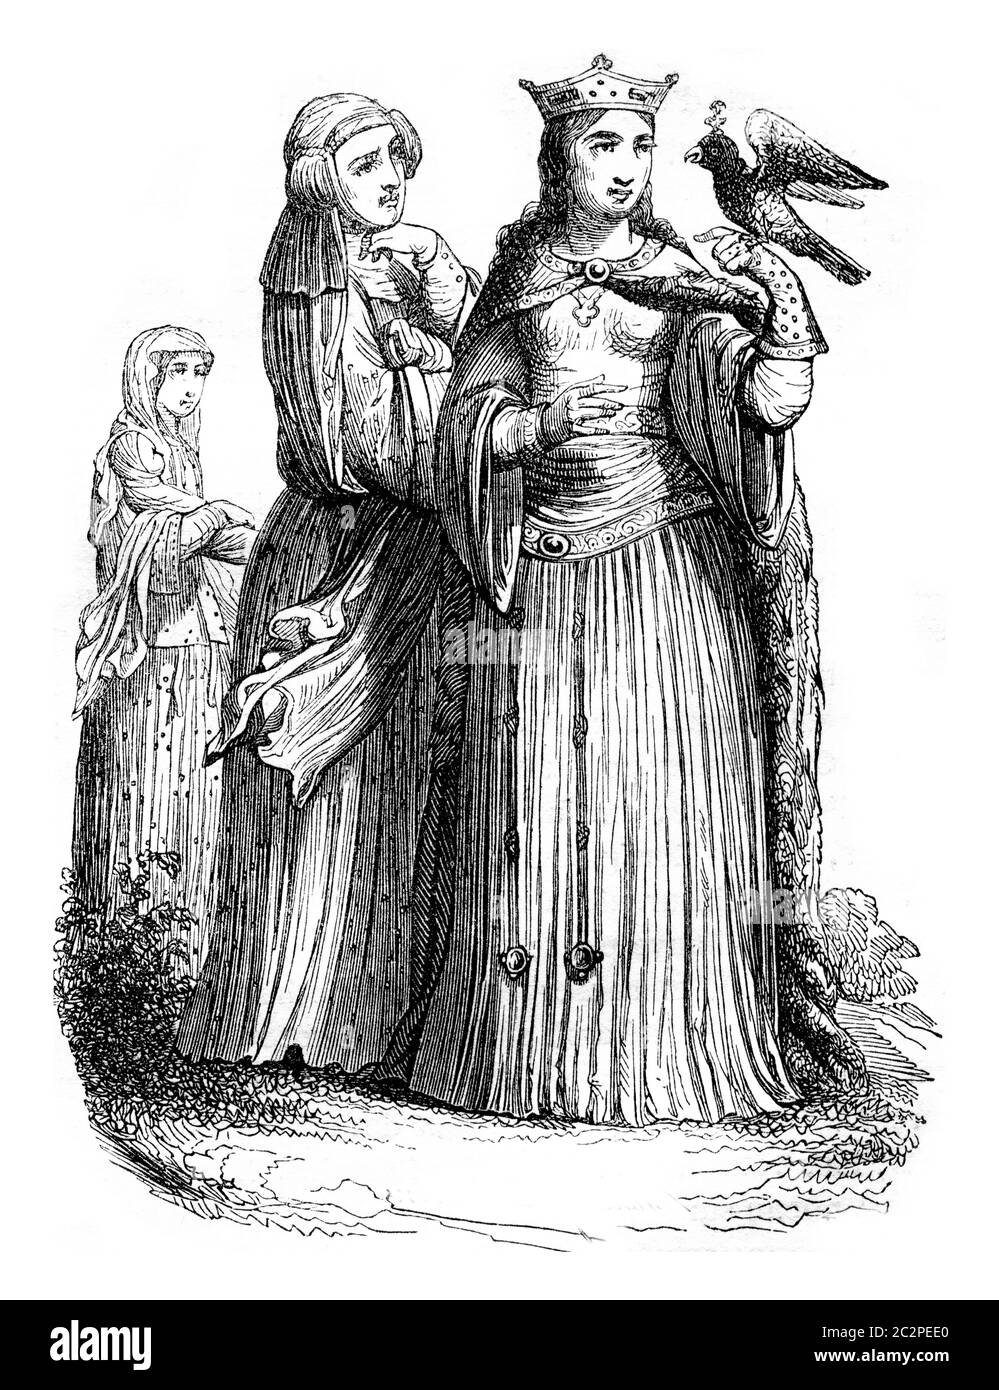 Principessa e Signore della corte di Carlo il Calvo, illustrazione d'epoca incisa. Magasin Pittoresque 1843. Foto Stock